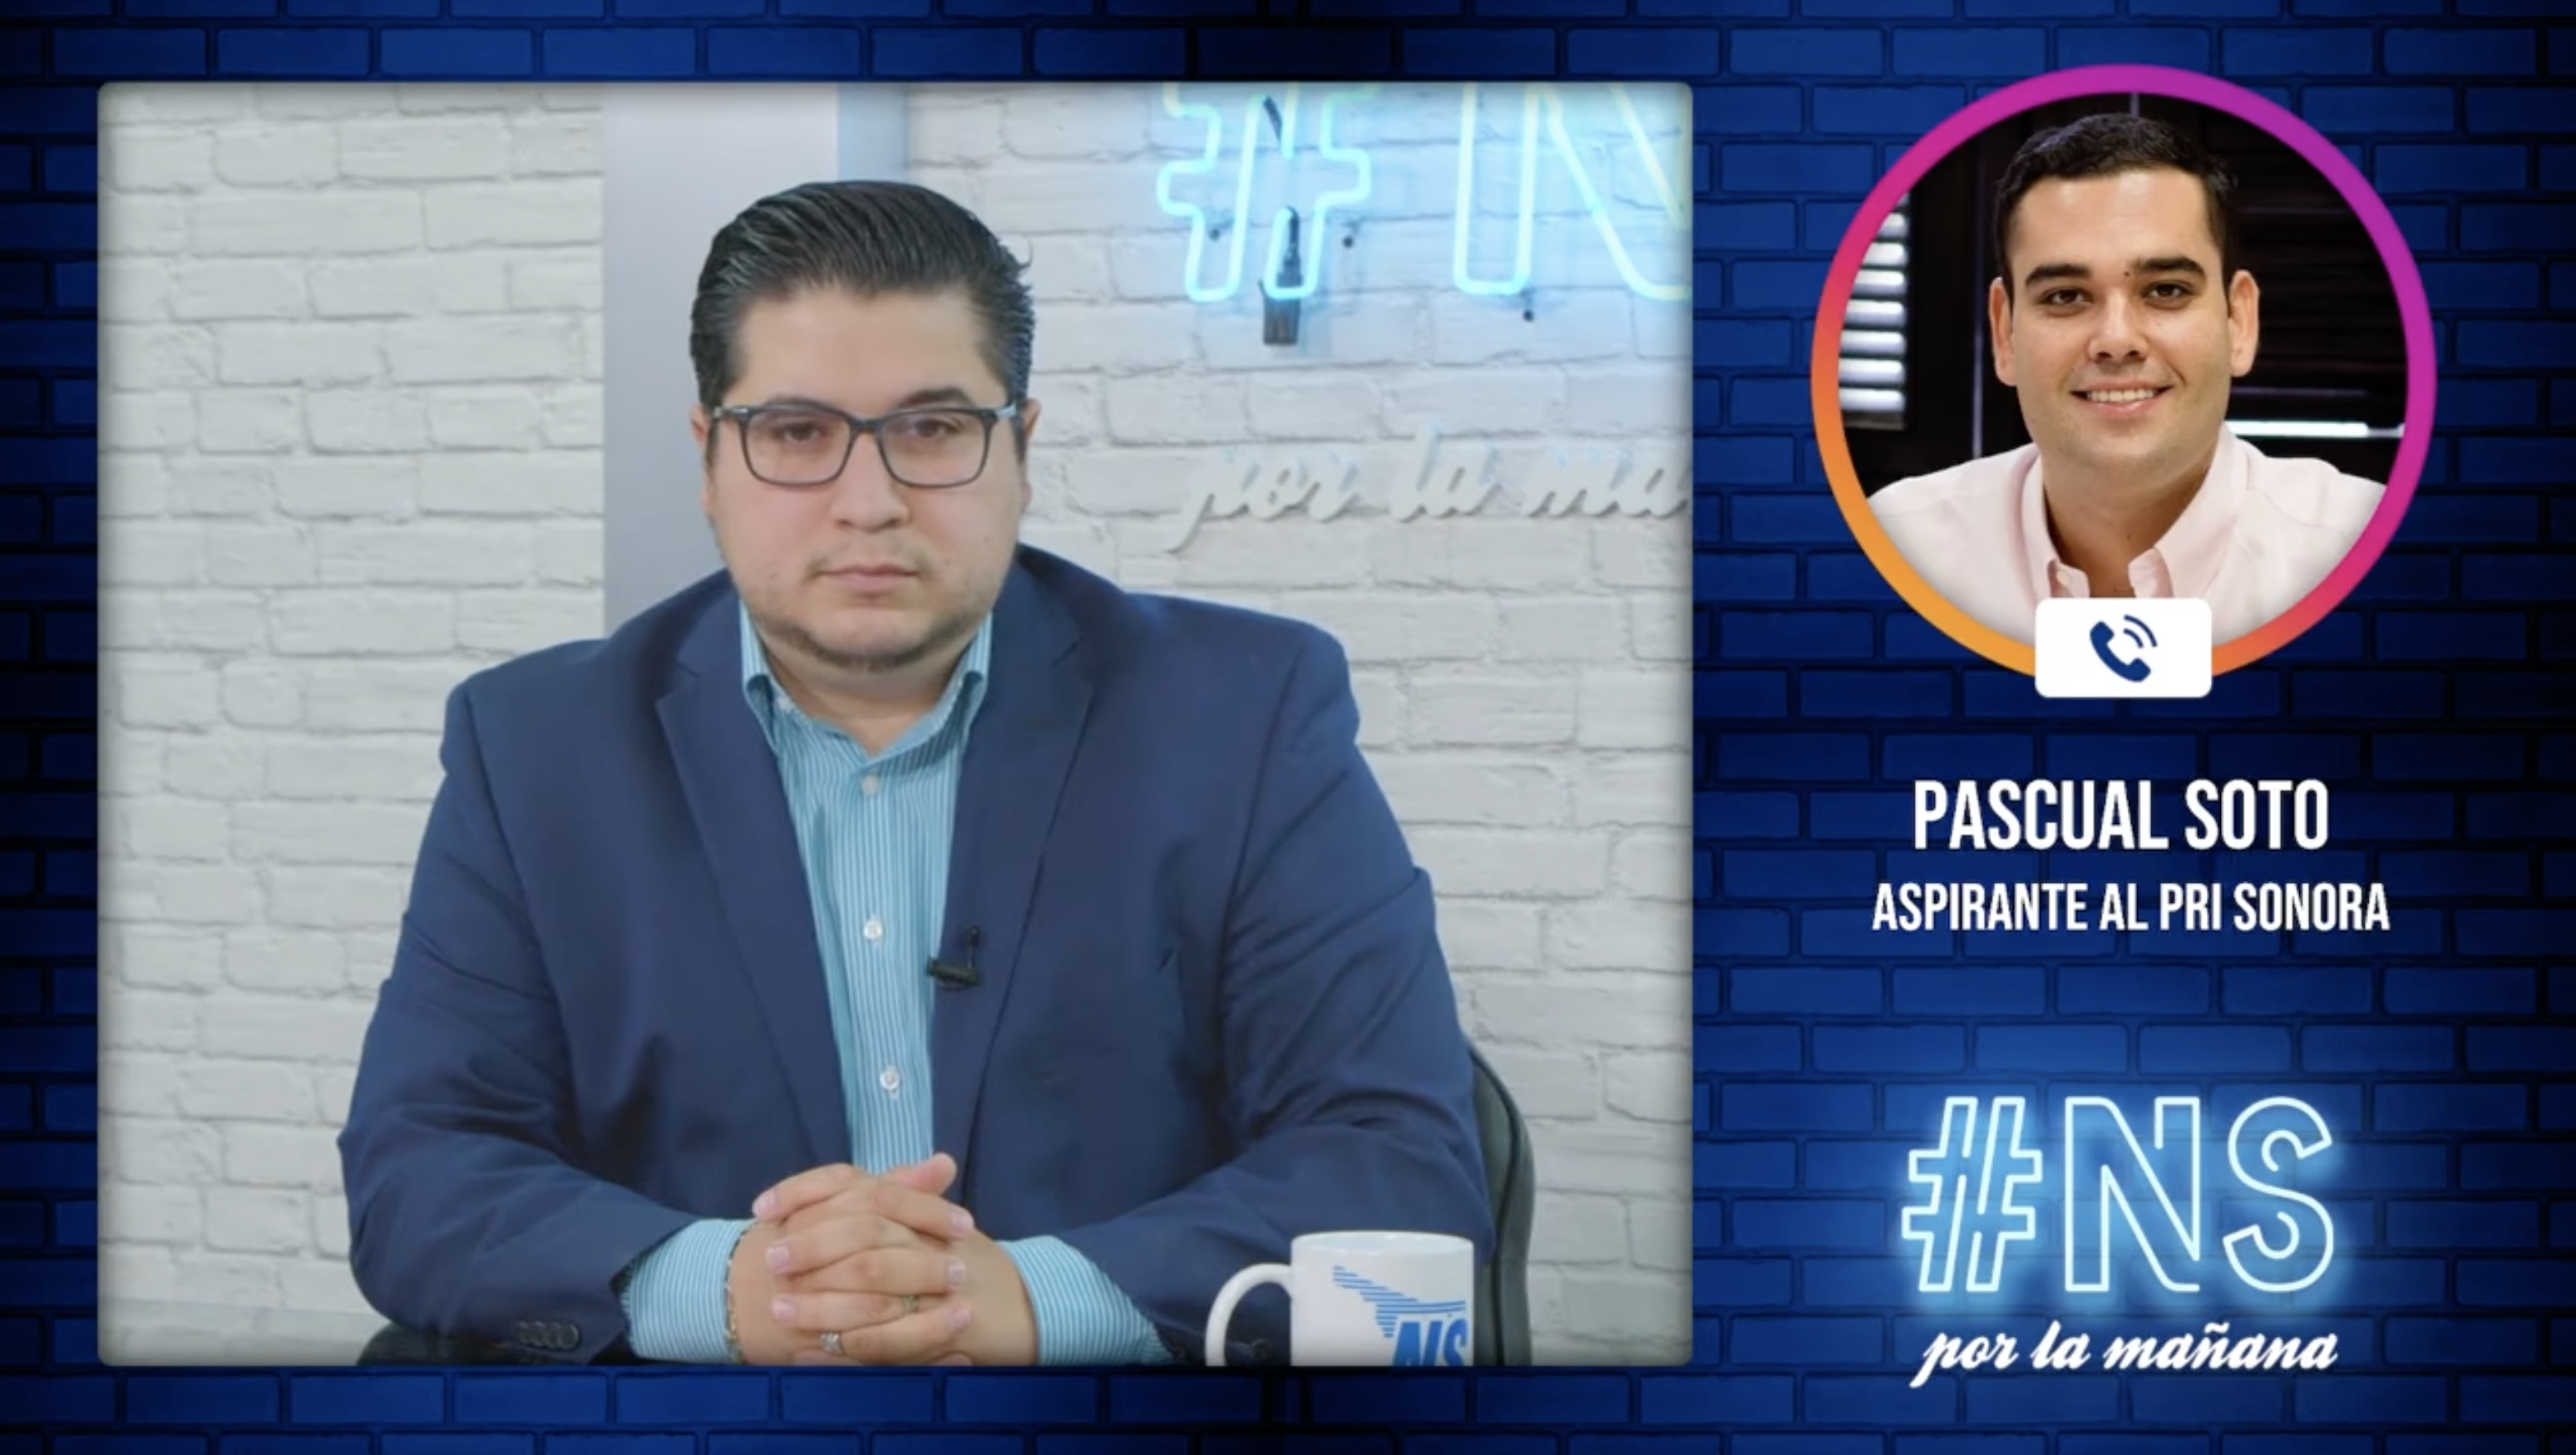 La oposición en Sonora necesita que renazca el PRI: Pascual Soto